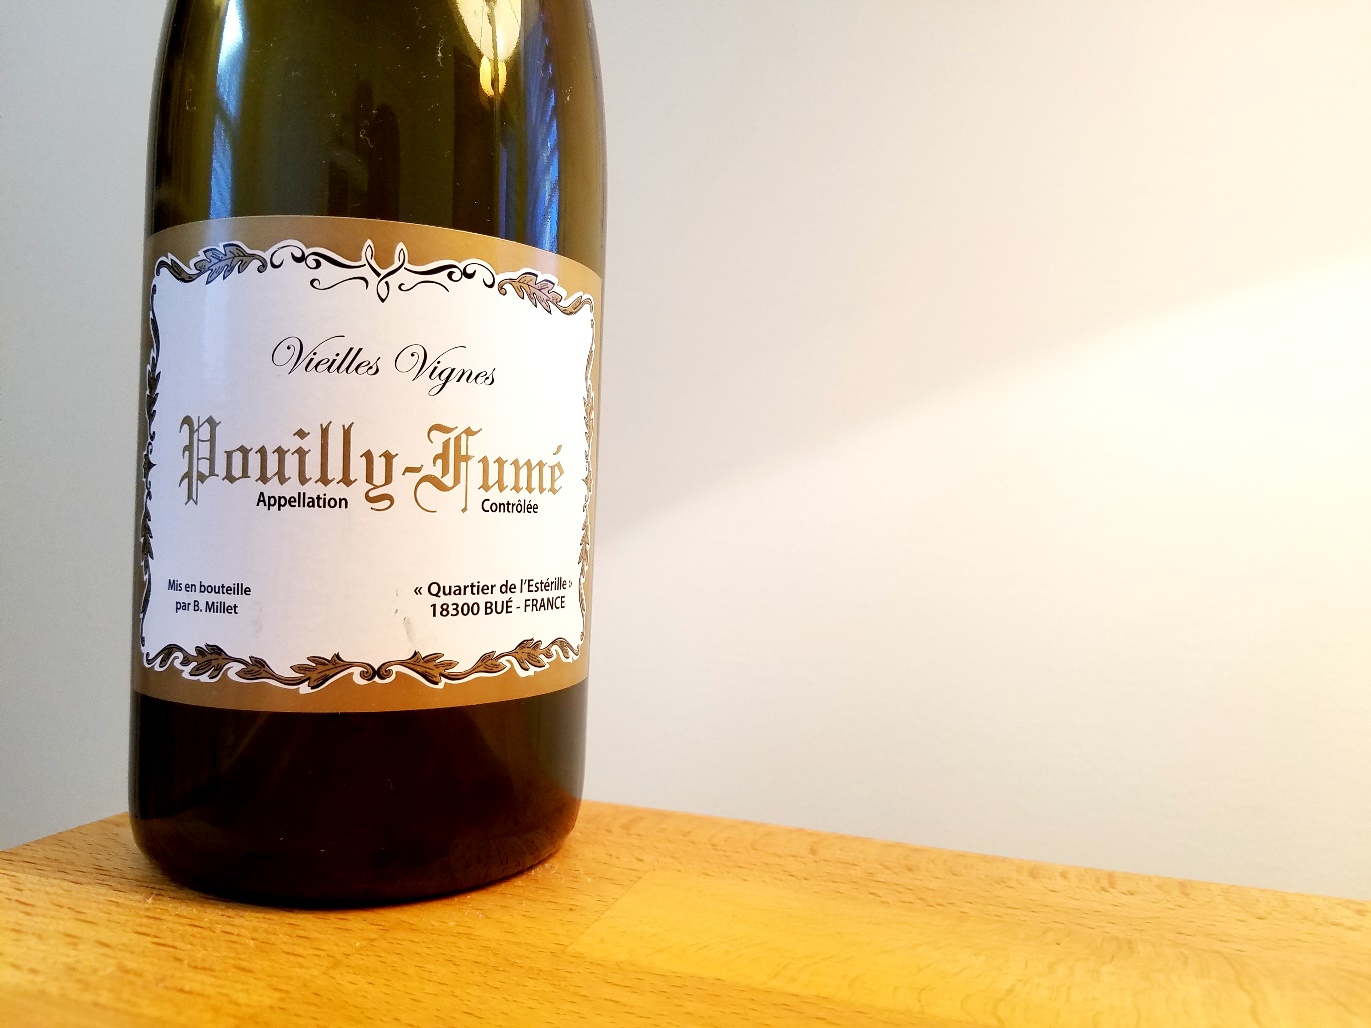 B. Millet, Vieilles Vignes Pouilly-Fumé 2018, Loire, France, Wine Casual